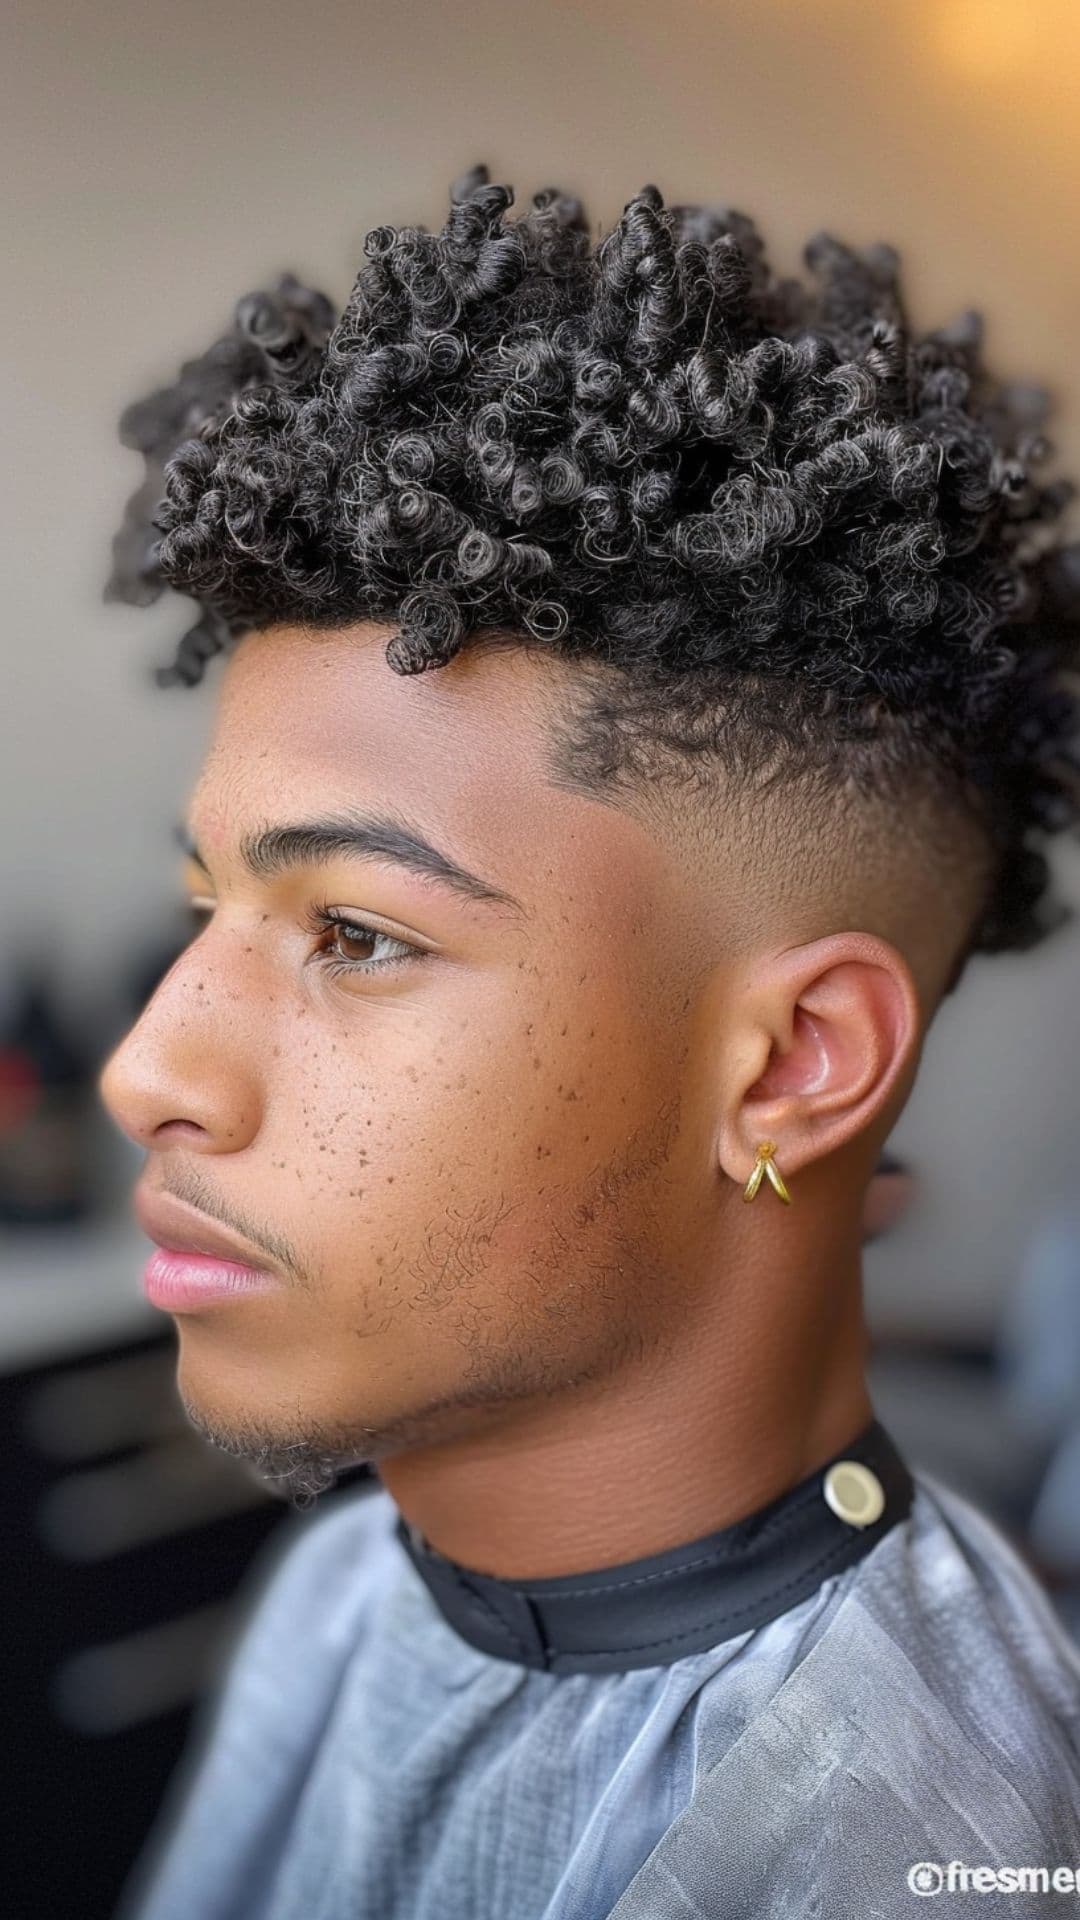 A man modelling an Afro hair undercut.